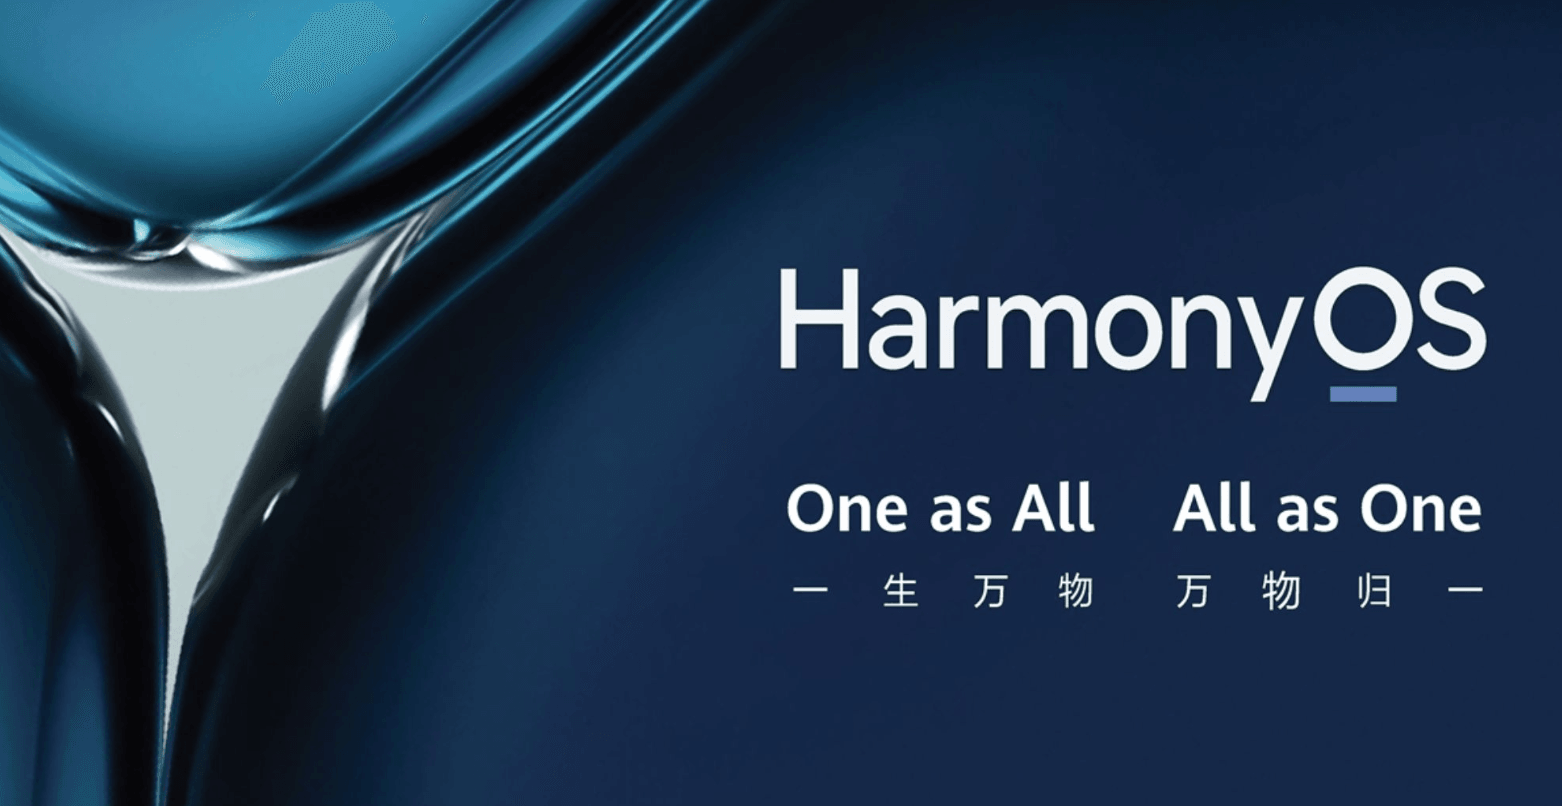 HarmonyOs Next to wielki krok. Huawei całkowicie odetnie się od Androida